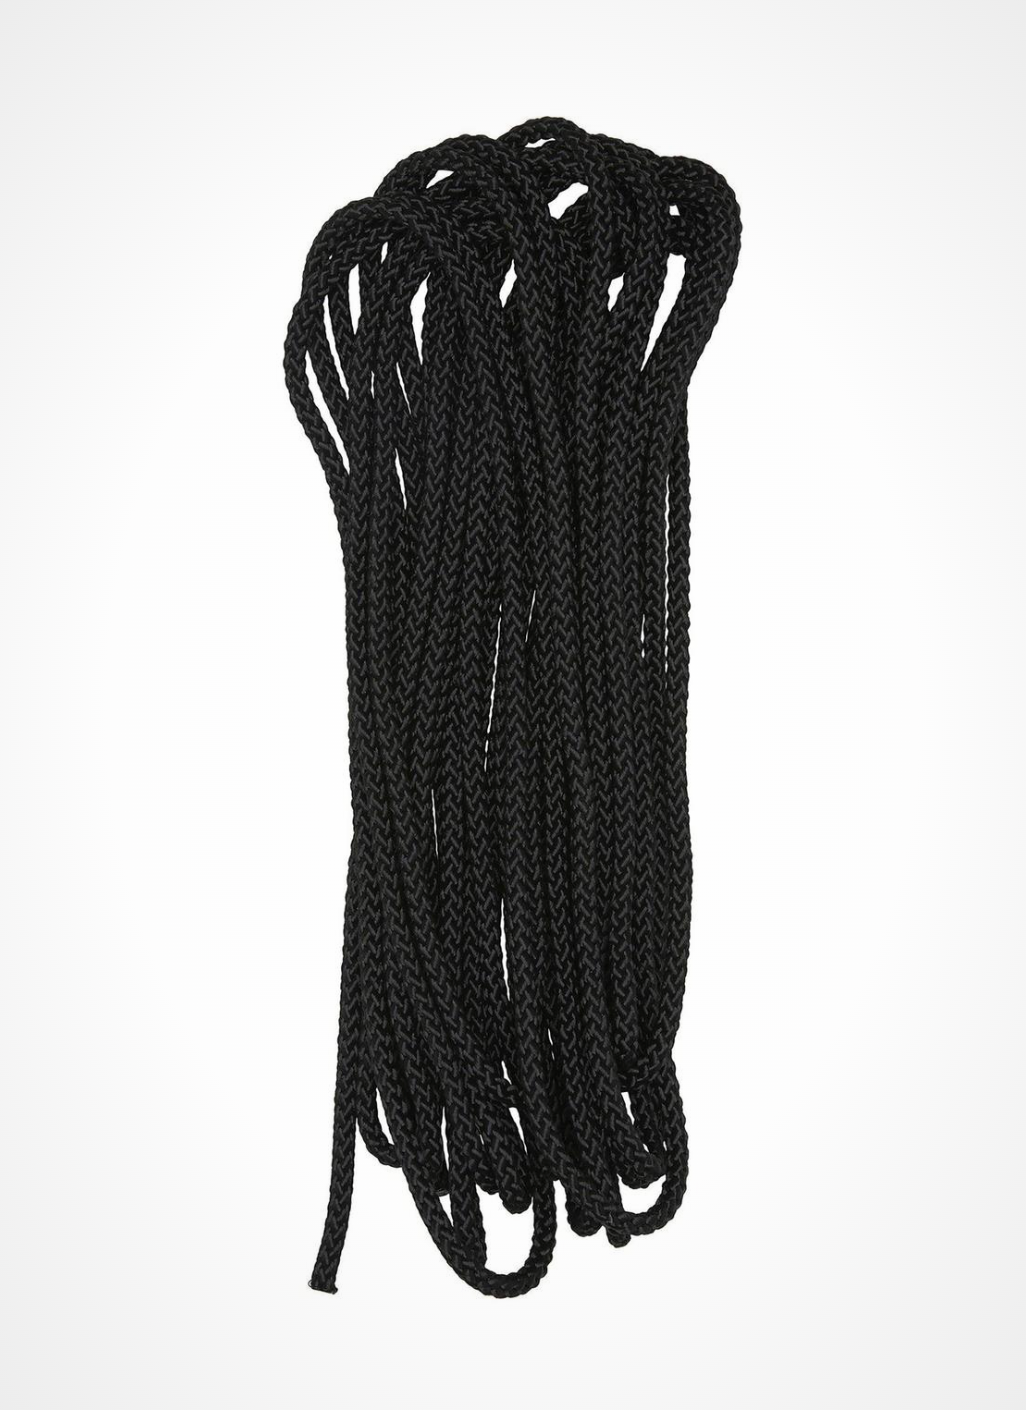 Corde pour suspension - 10m